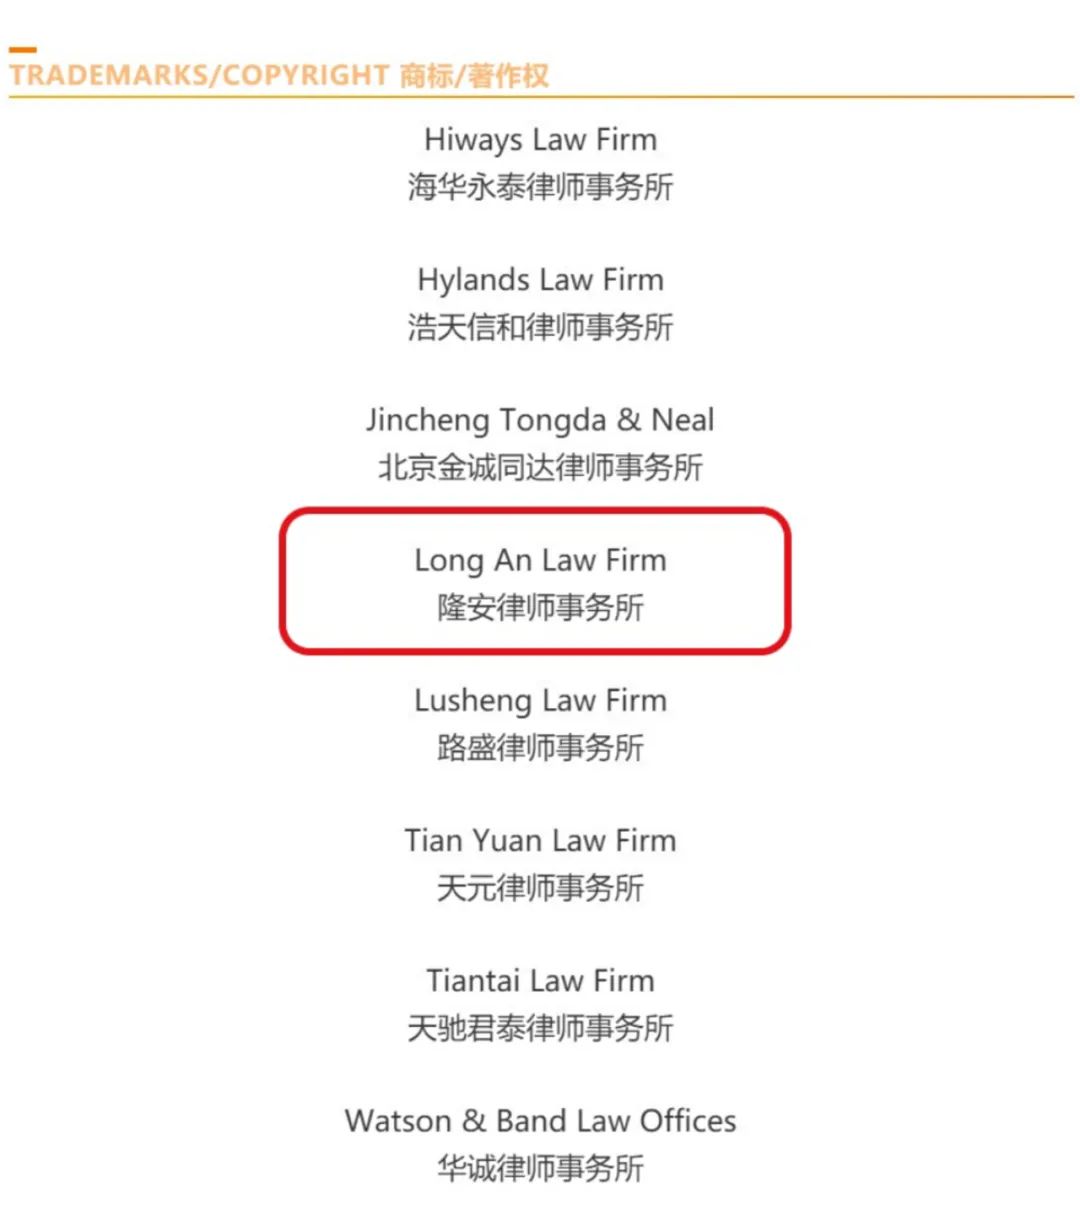 隆安荣誉l 隆安连续六年荣登 ALB CHINA 知识产权排名榜